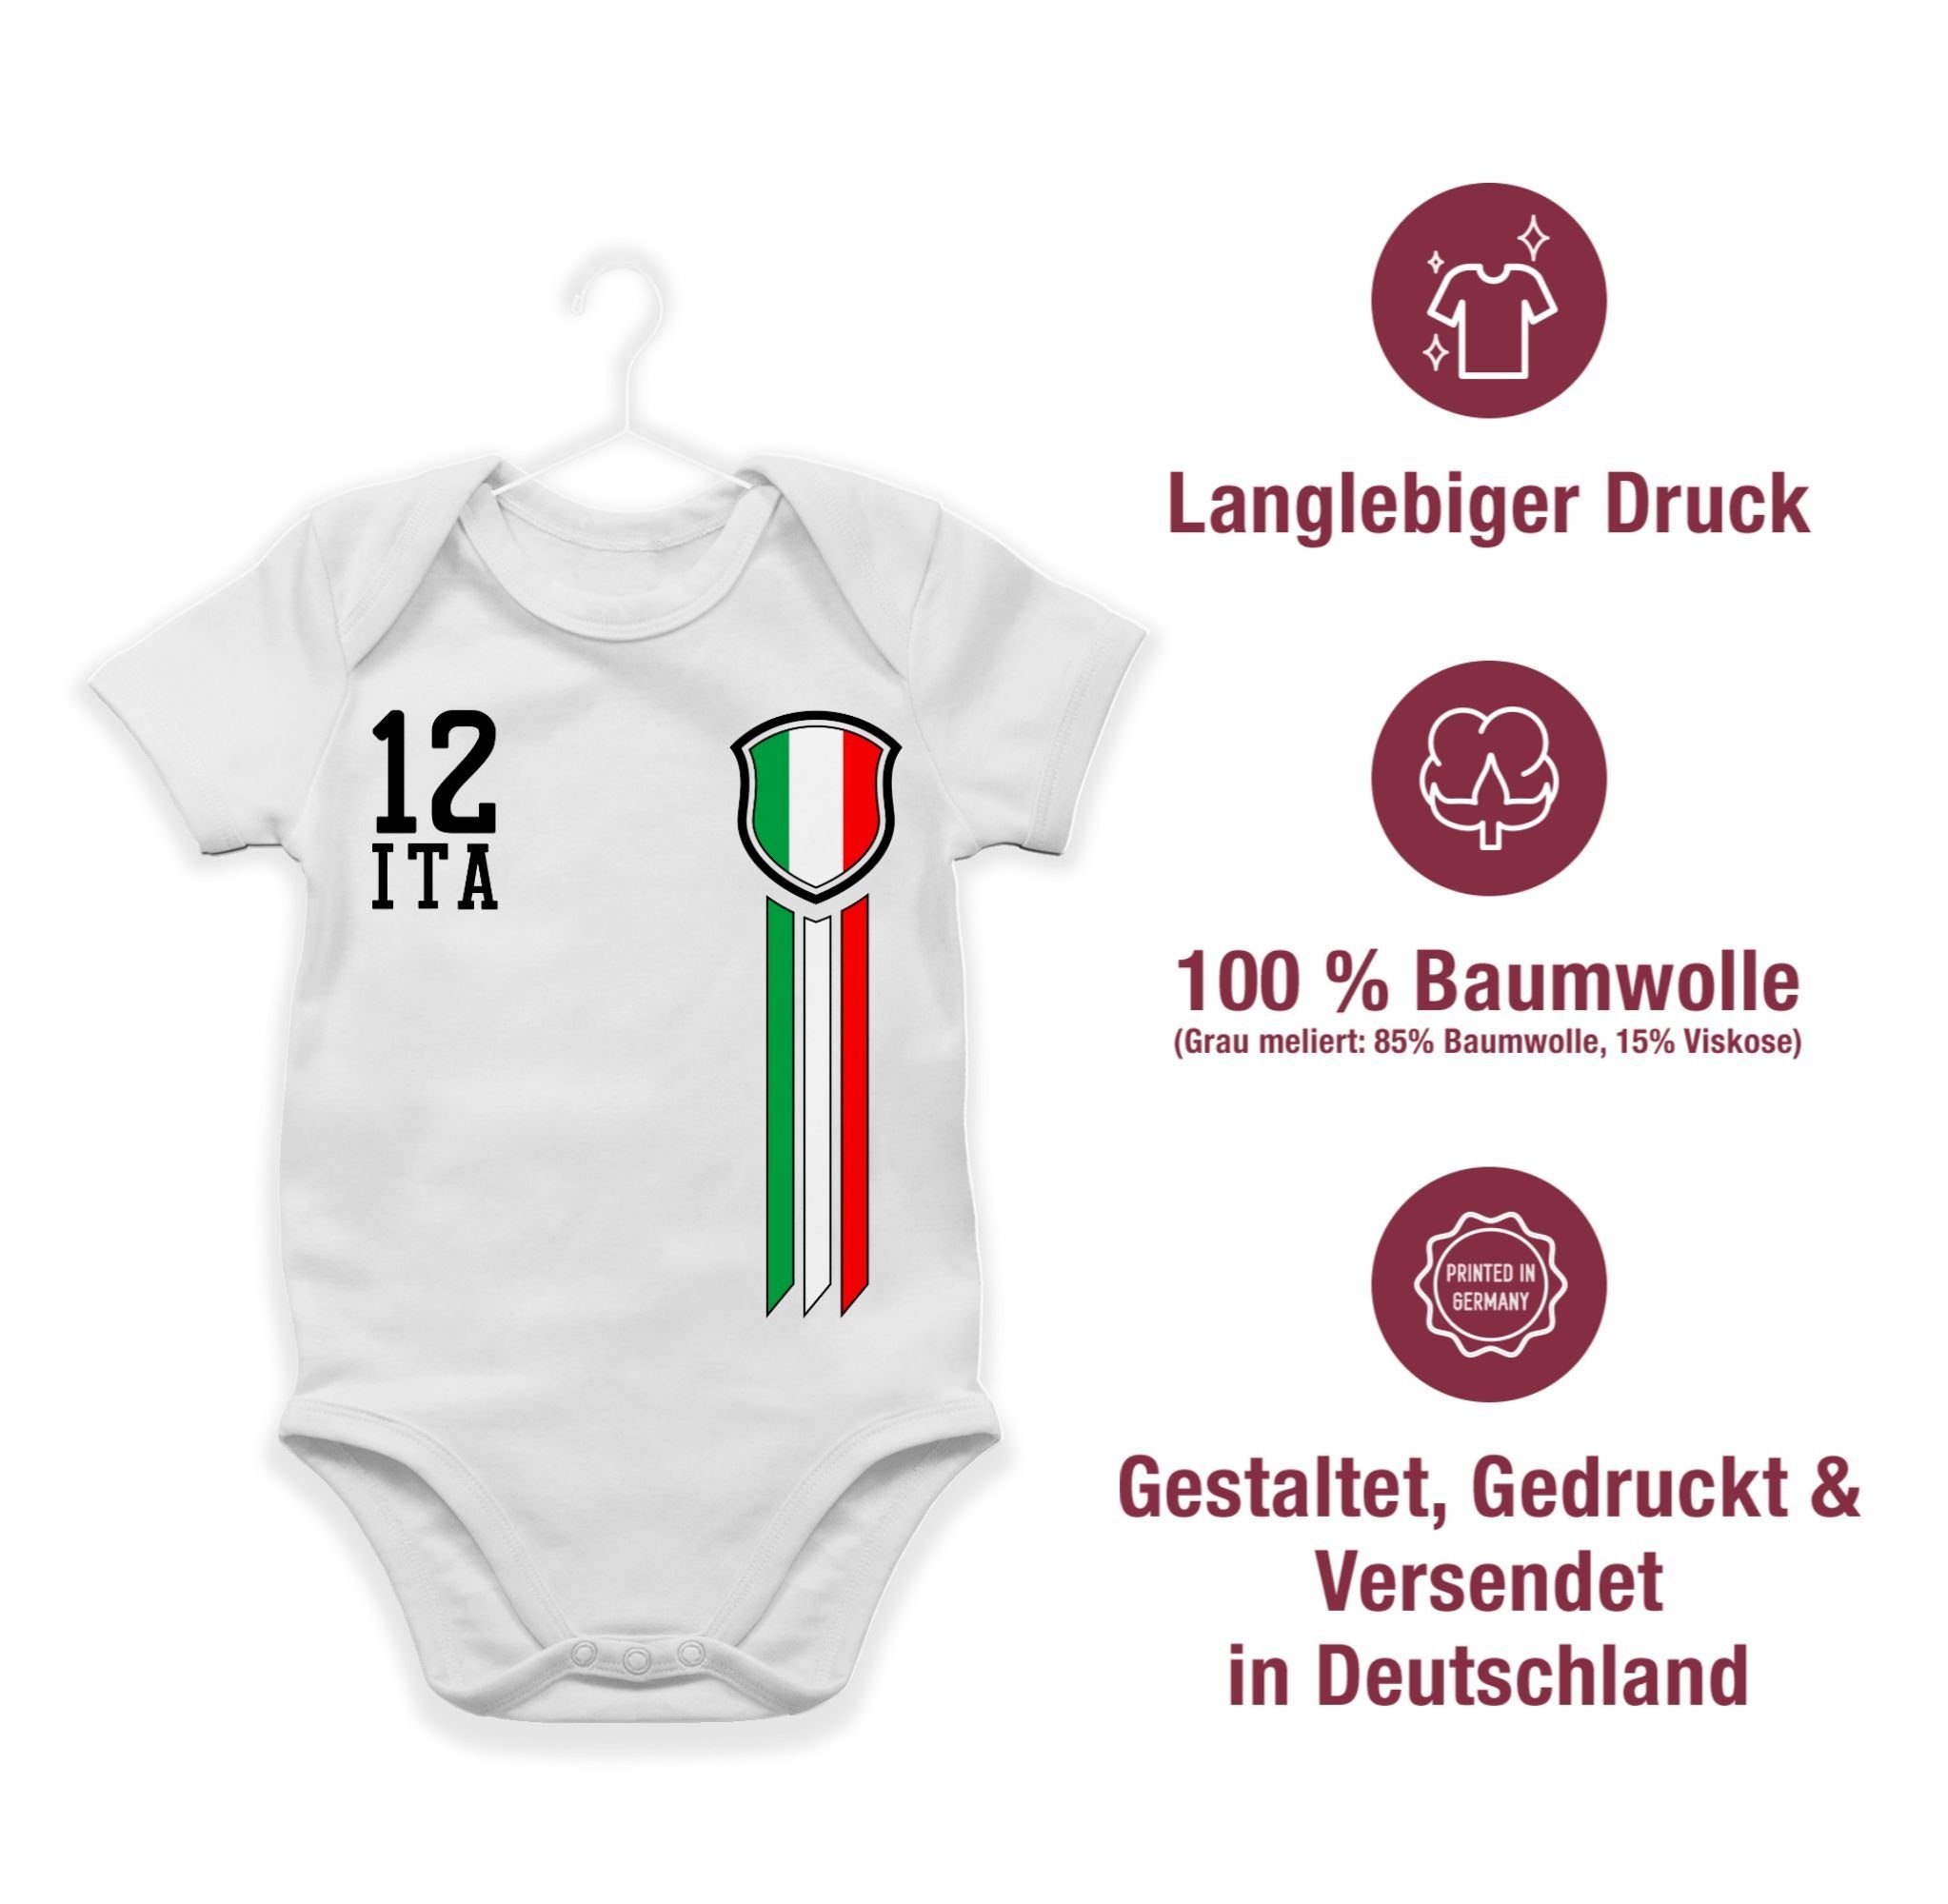 Shirtracer Shirtbody 12. Mann Italien Fanshirt 3 2024 Weiß EM Fussball Baby